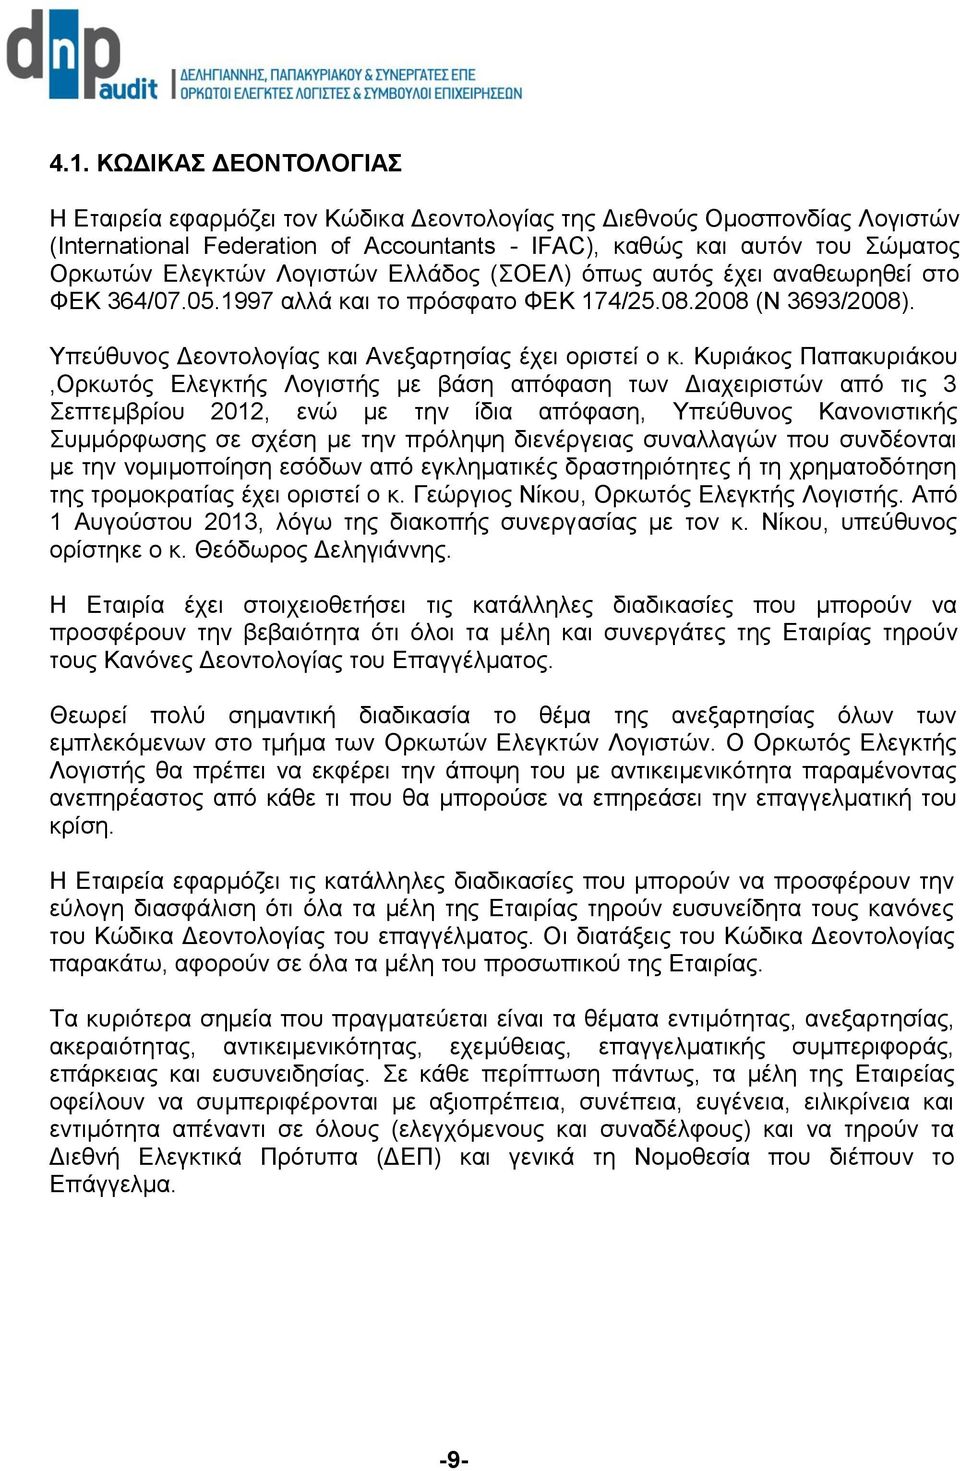 Κυριάκος Παπακυριάκου,Ορκωτός Ελεγκτής Λογιστής με βάση απόφαση των Διαχειριστών από τις 3 Σεπτεμβρίου 2012, ενώ με την ίδια απόφαση, Υπεύθυνος Κανονιστικής Συμμόρφωσης σε σχέση με την πρόληψη